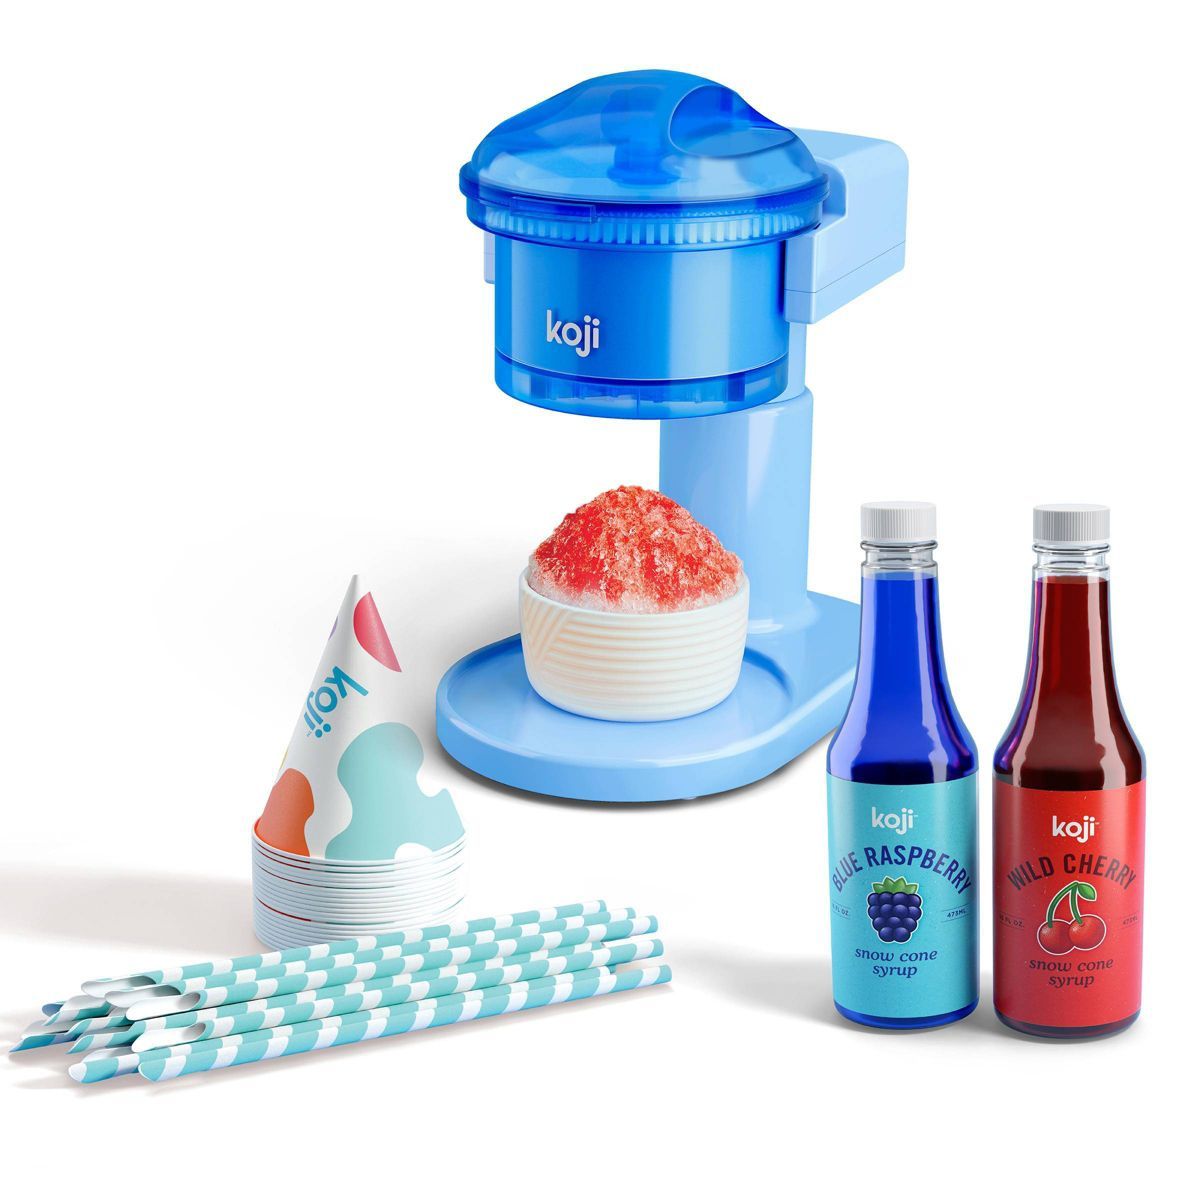 Koji Snow Cone Maker Set | Target